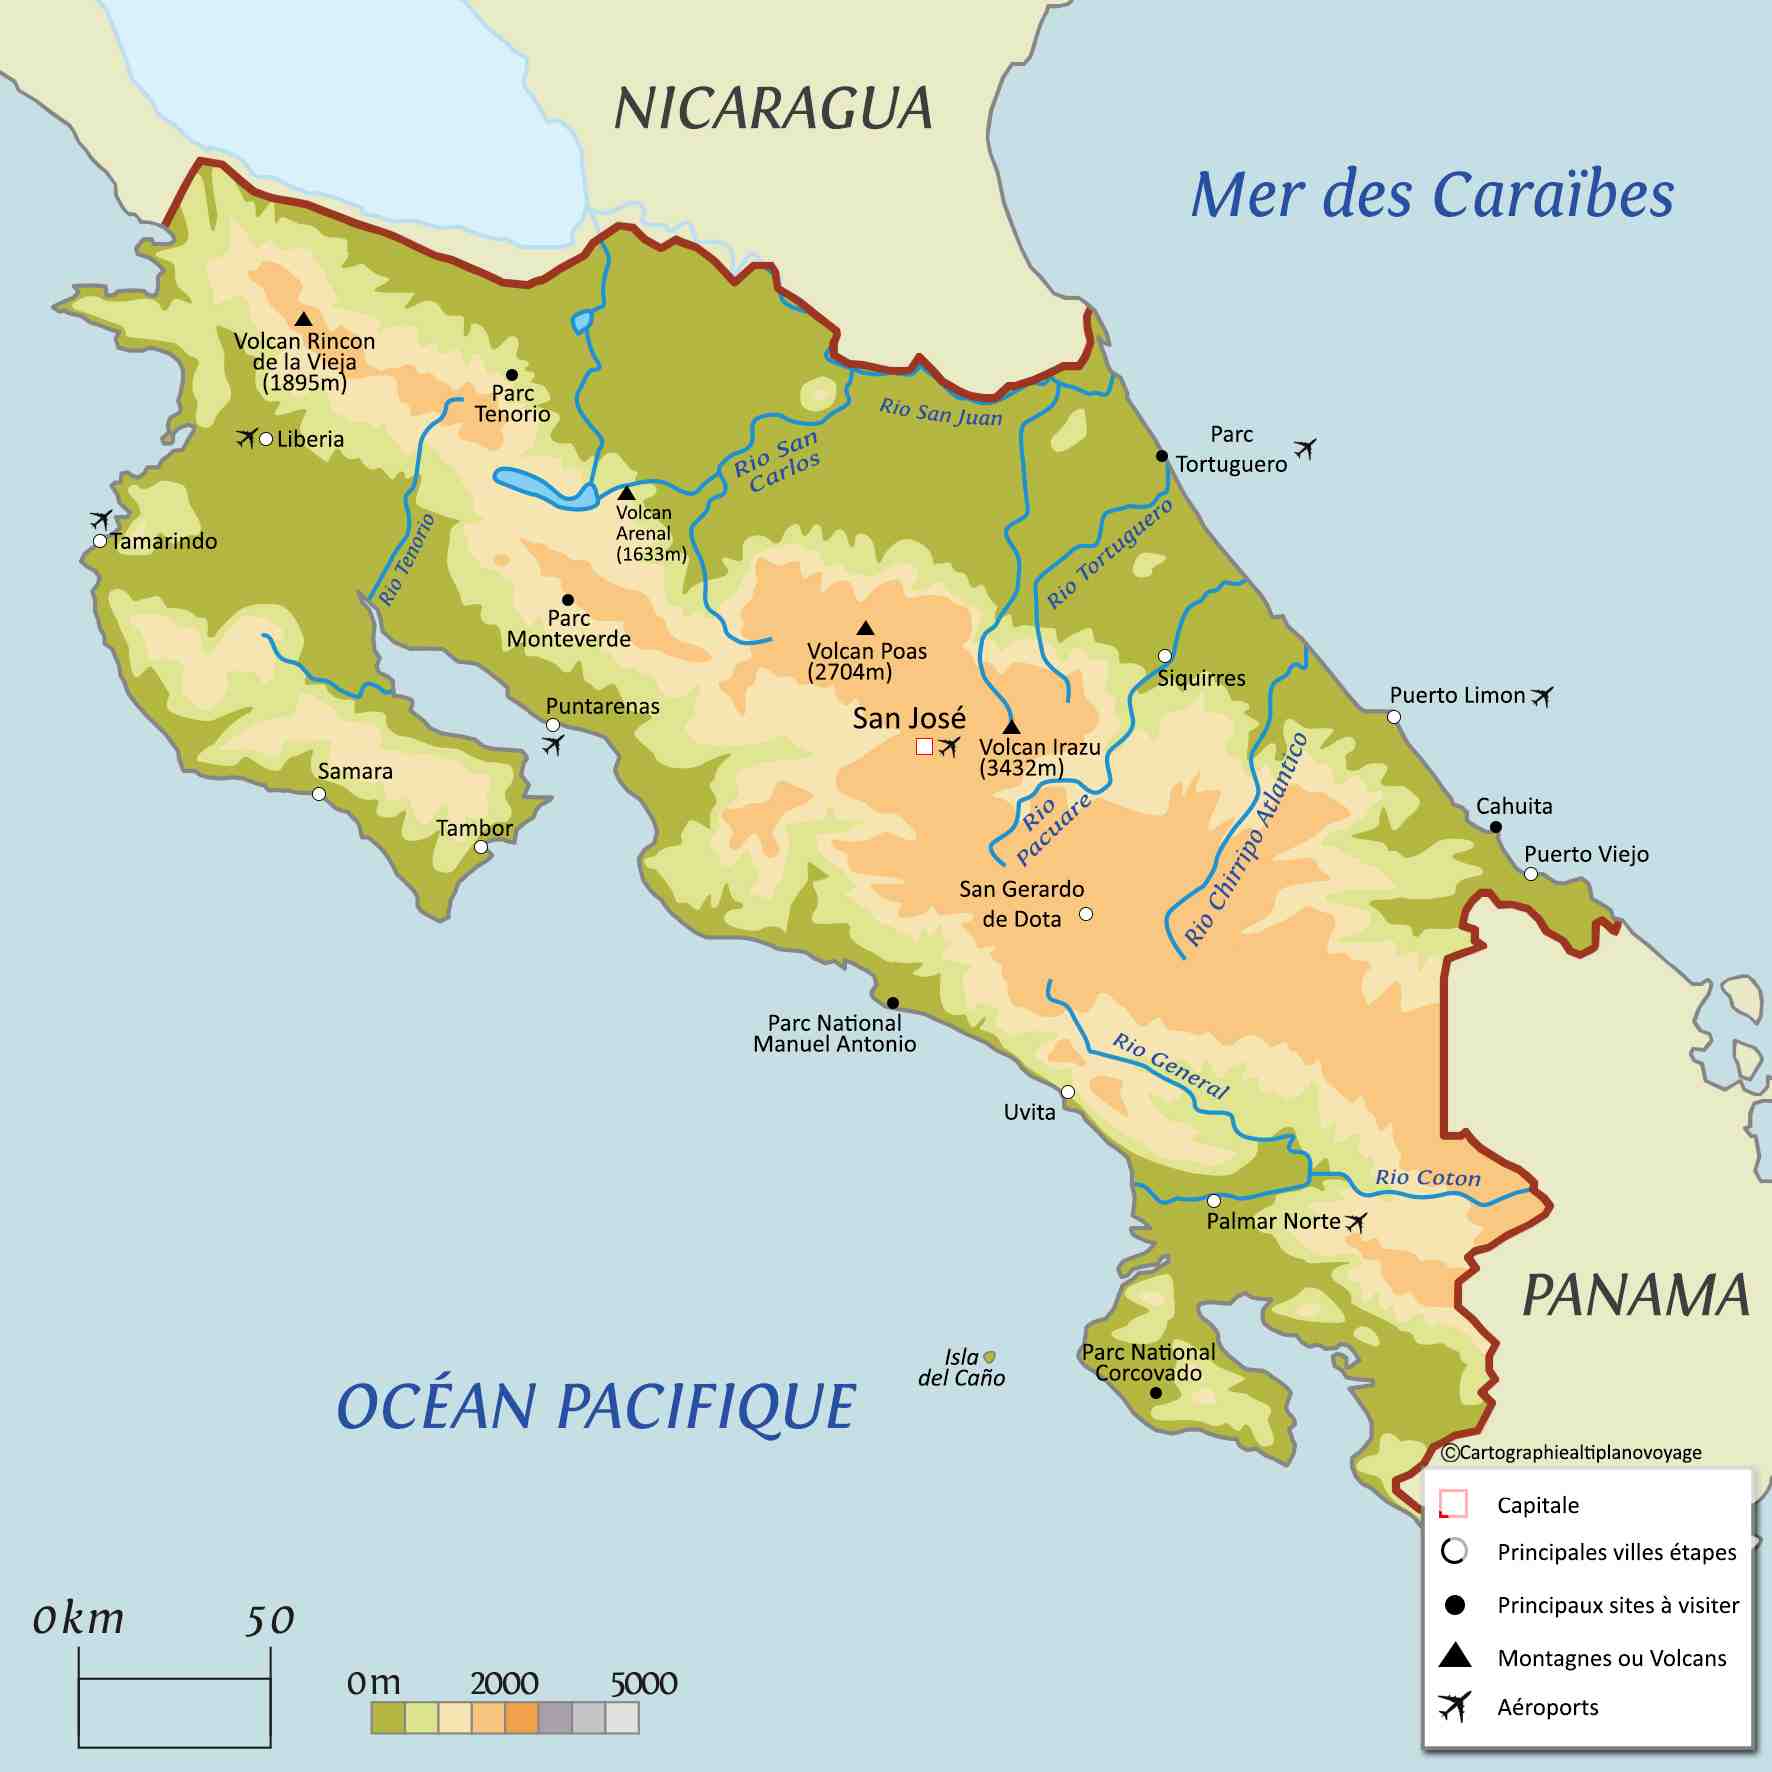 Quelle est la meilleure période pour visiter le Costa Rica ?